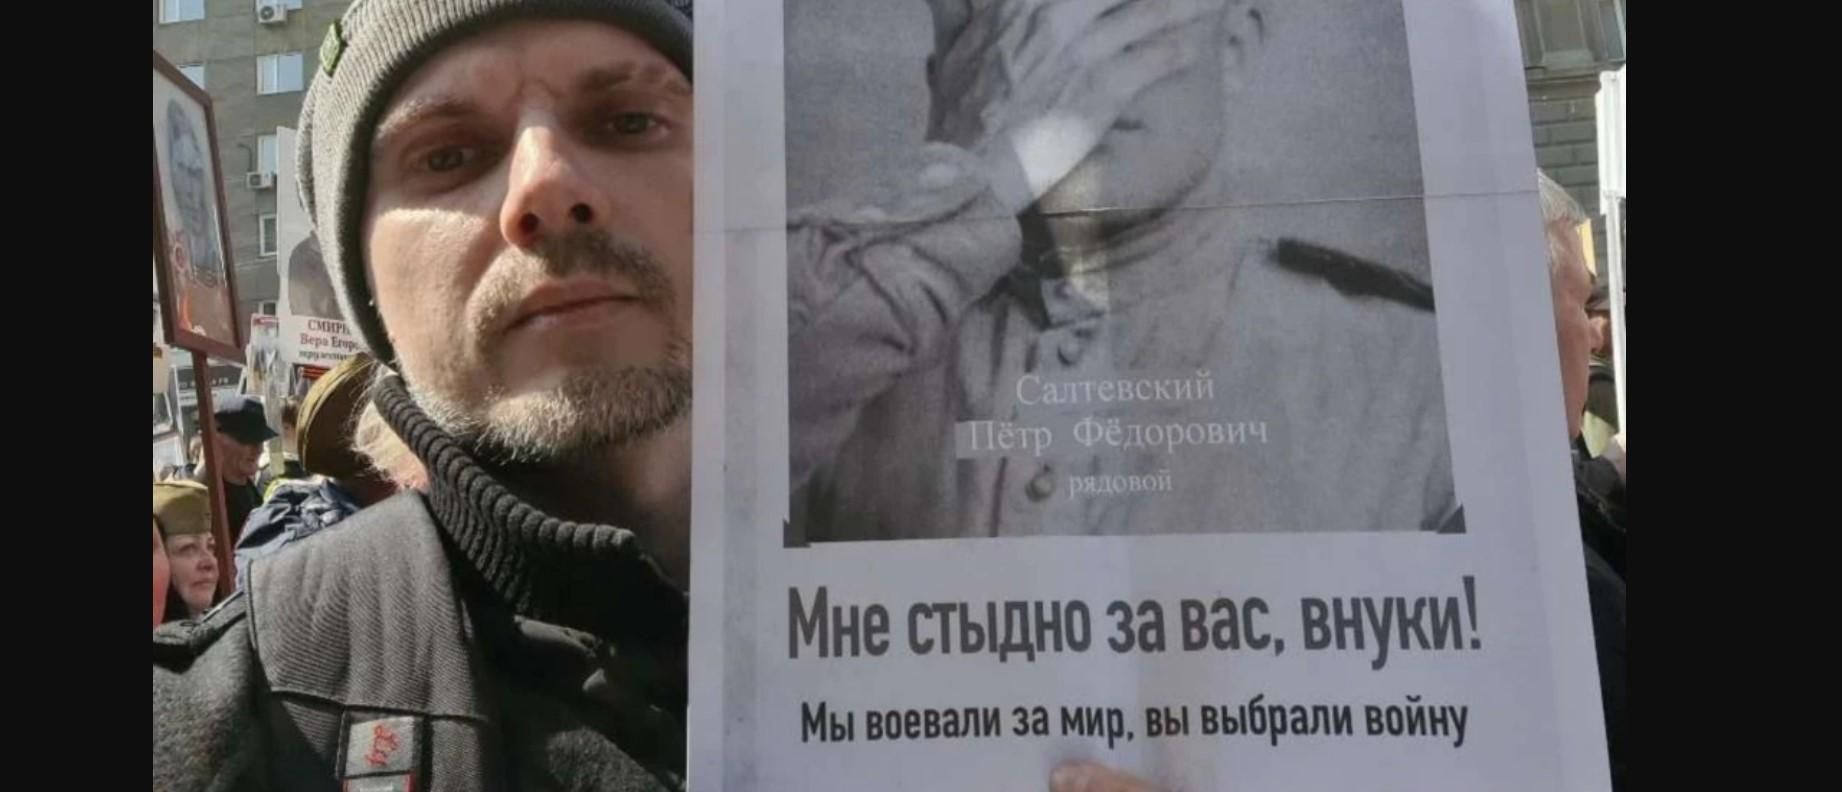 "Стыдно за вас, внуки": в российском Новосибирске задержали мужчину с антивоенным плакатом